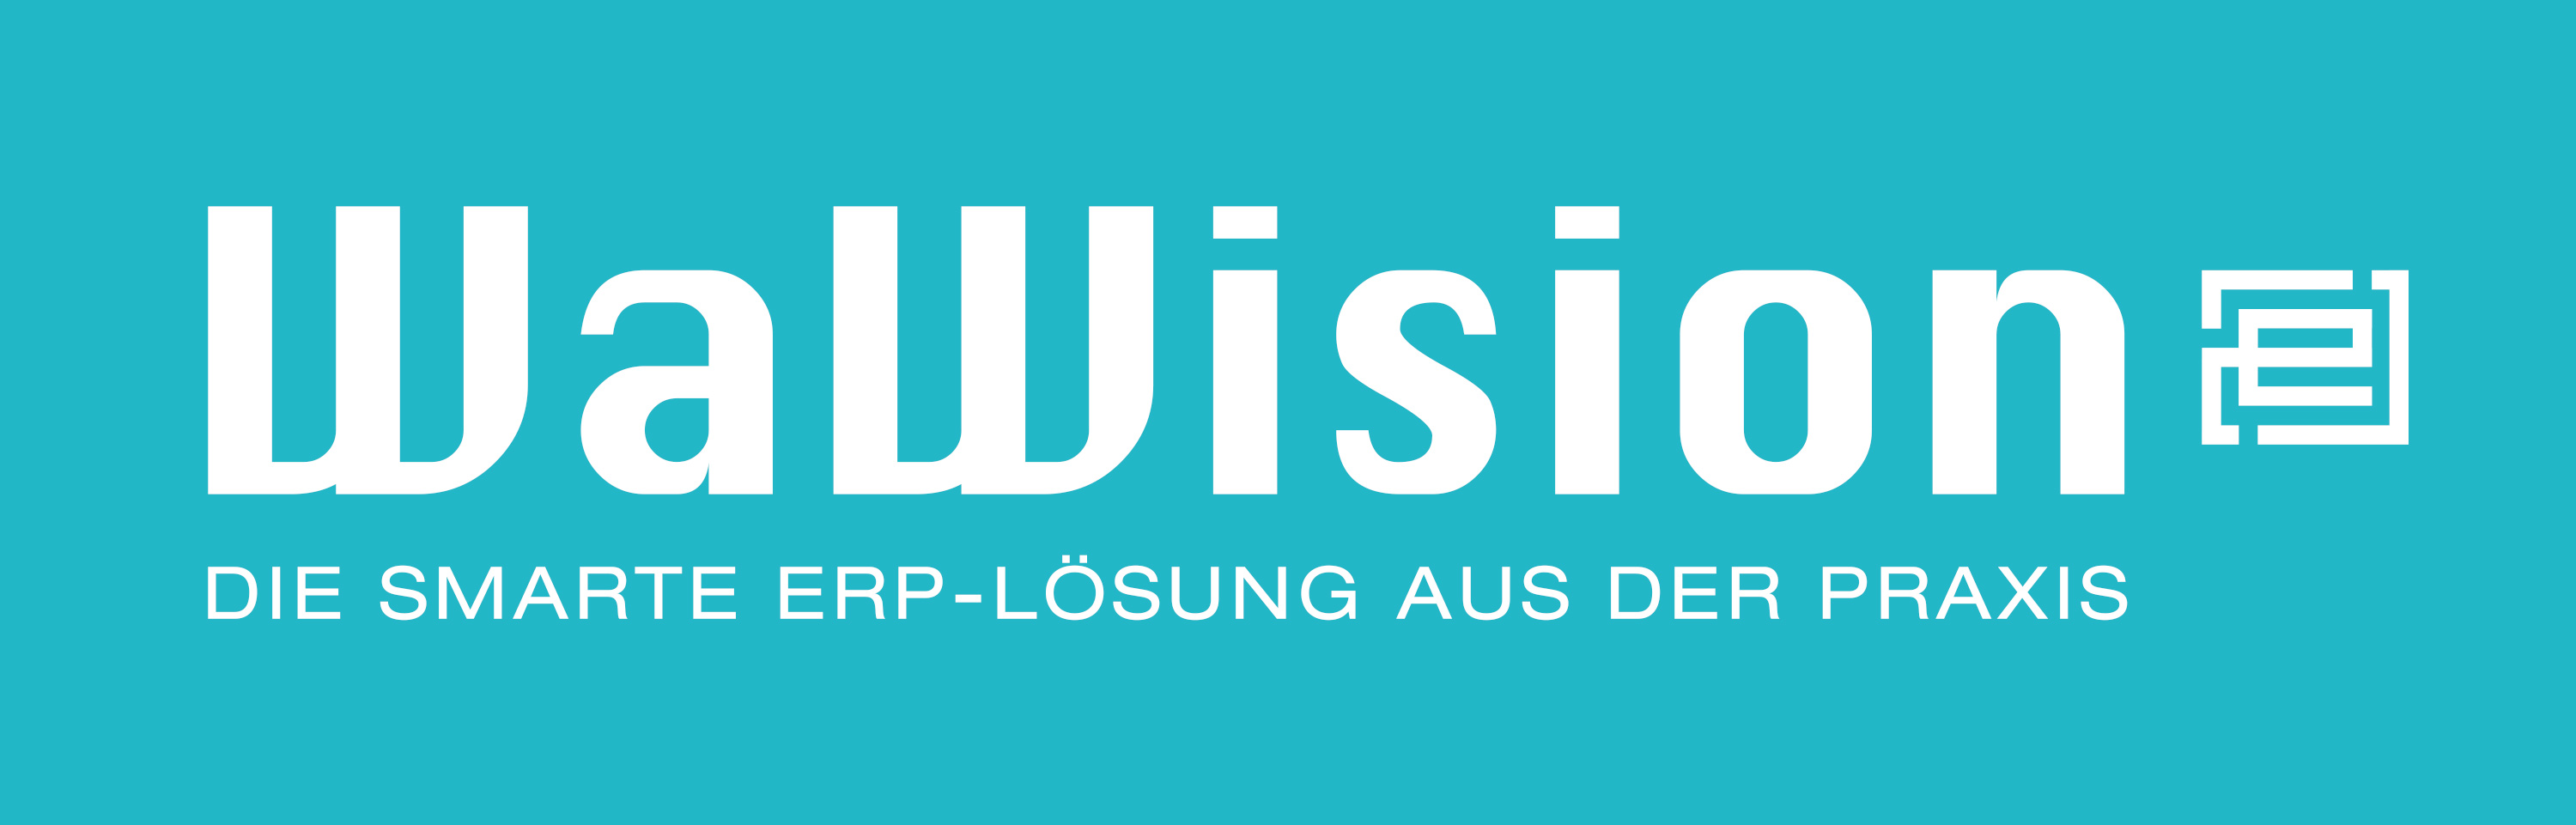 Logo 3zu1 deutsch in tuerkis weiss sRGB Generation 1 2017